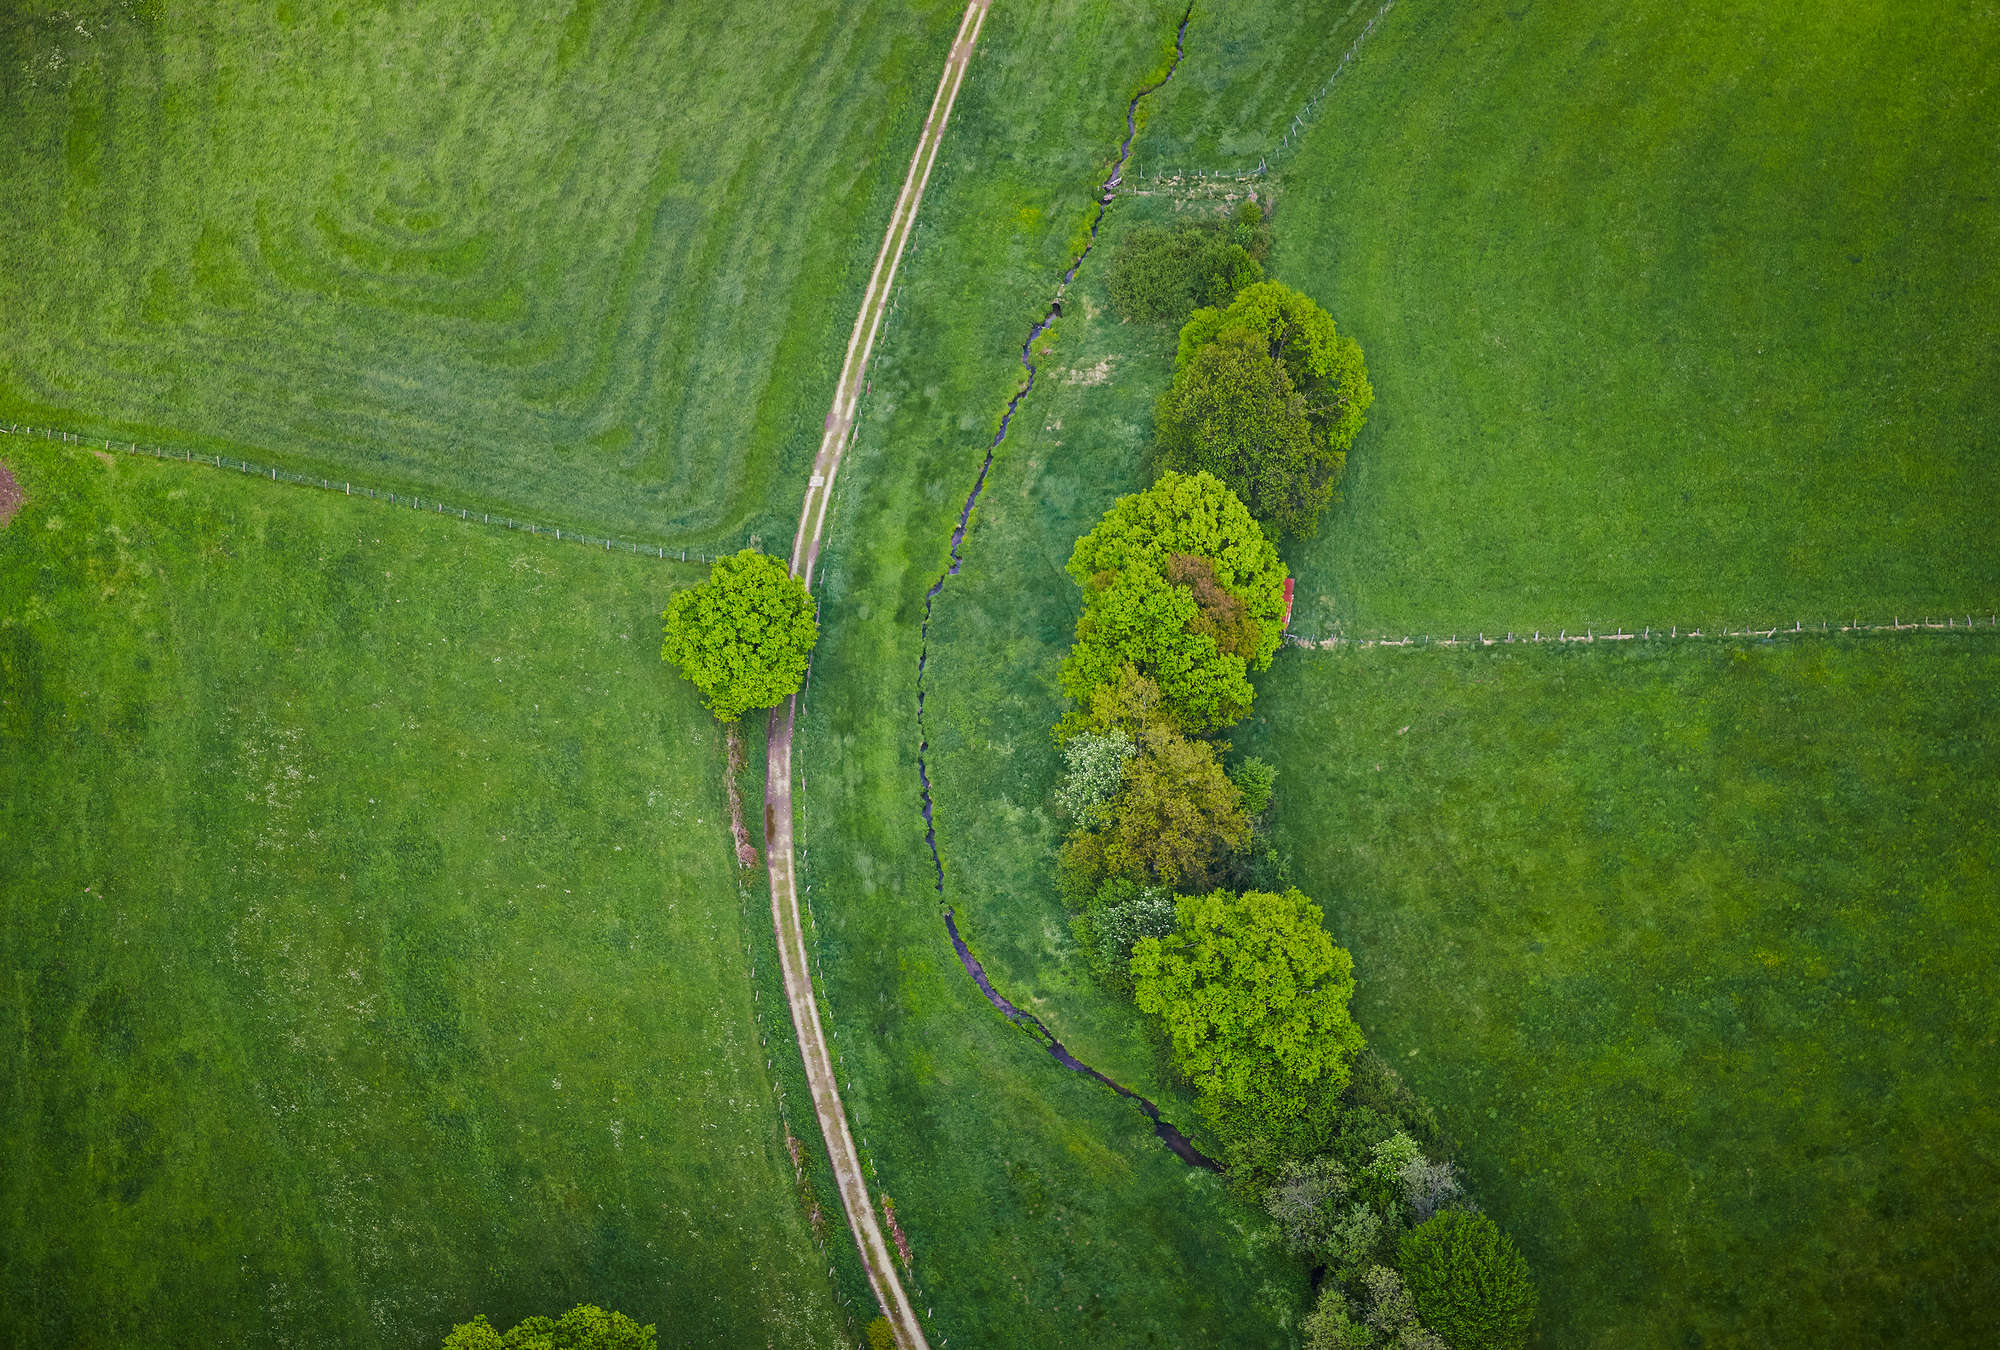             Paesaggio erboso visto a volo d'uccello - Campo con alberi
        